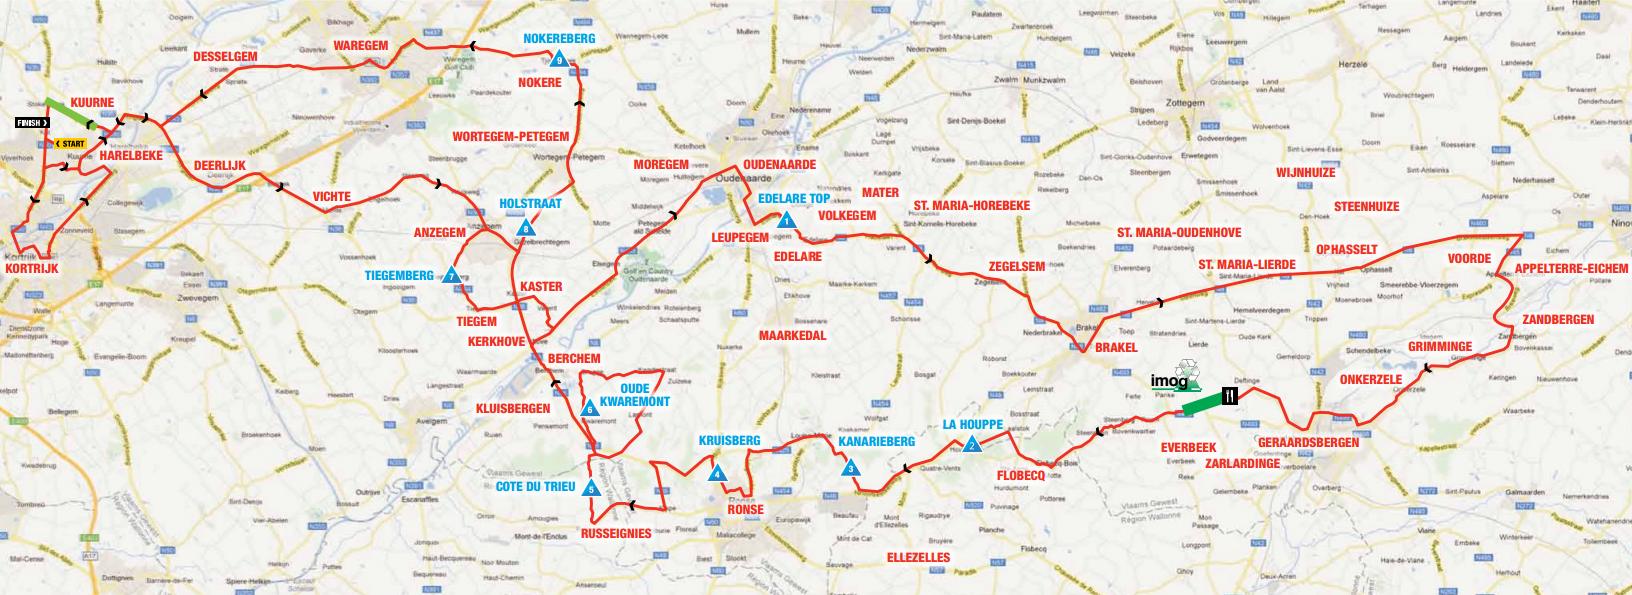 Kuurne-Bruxelles-Kuurne 2014 - parcours